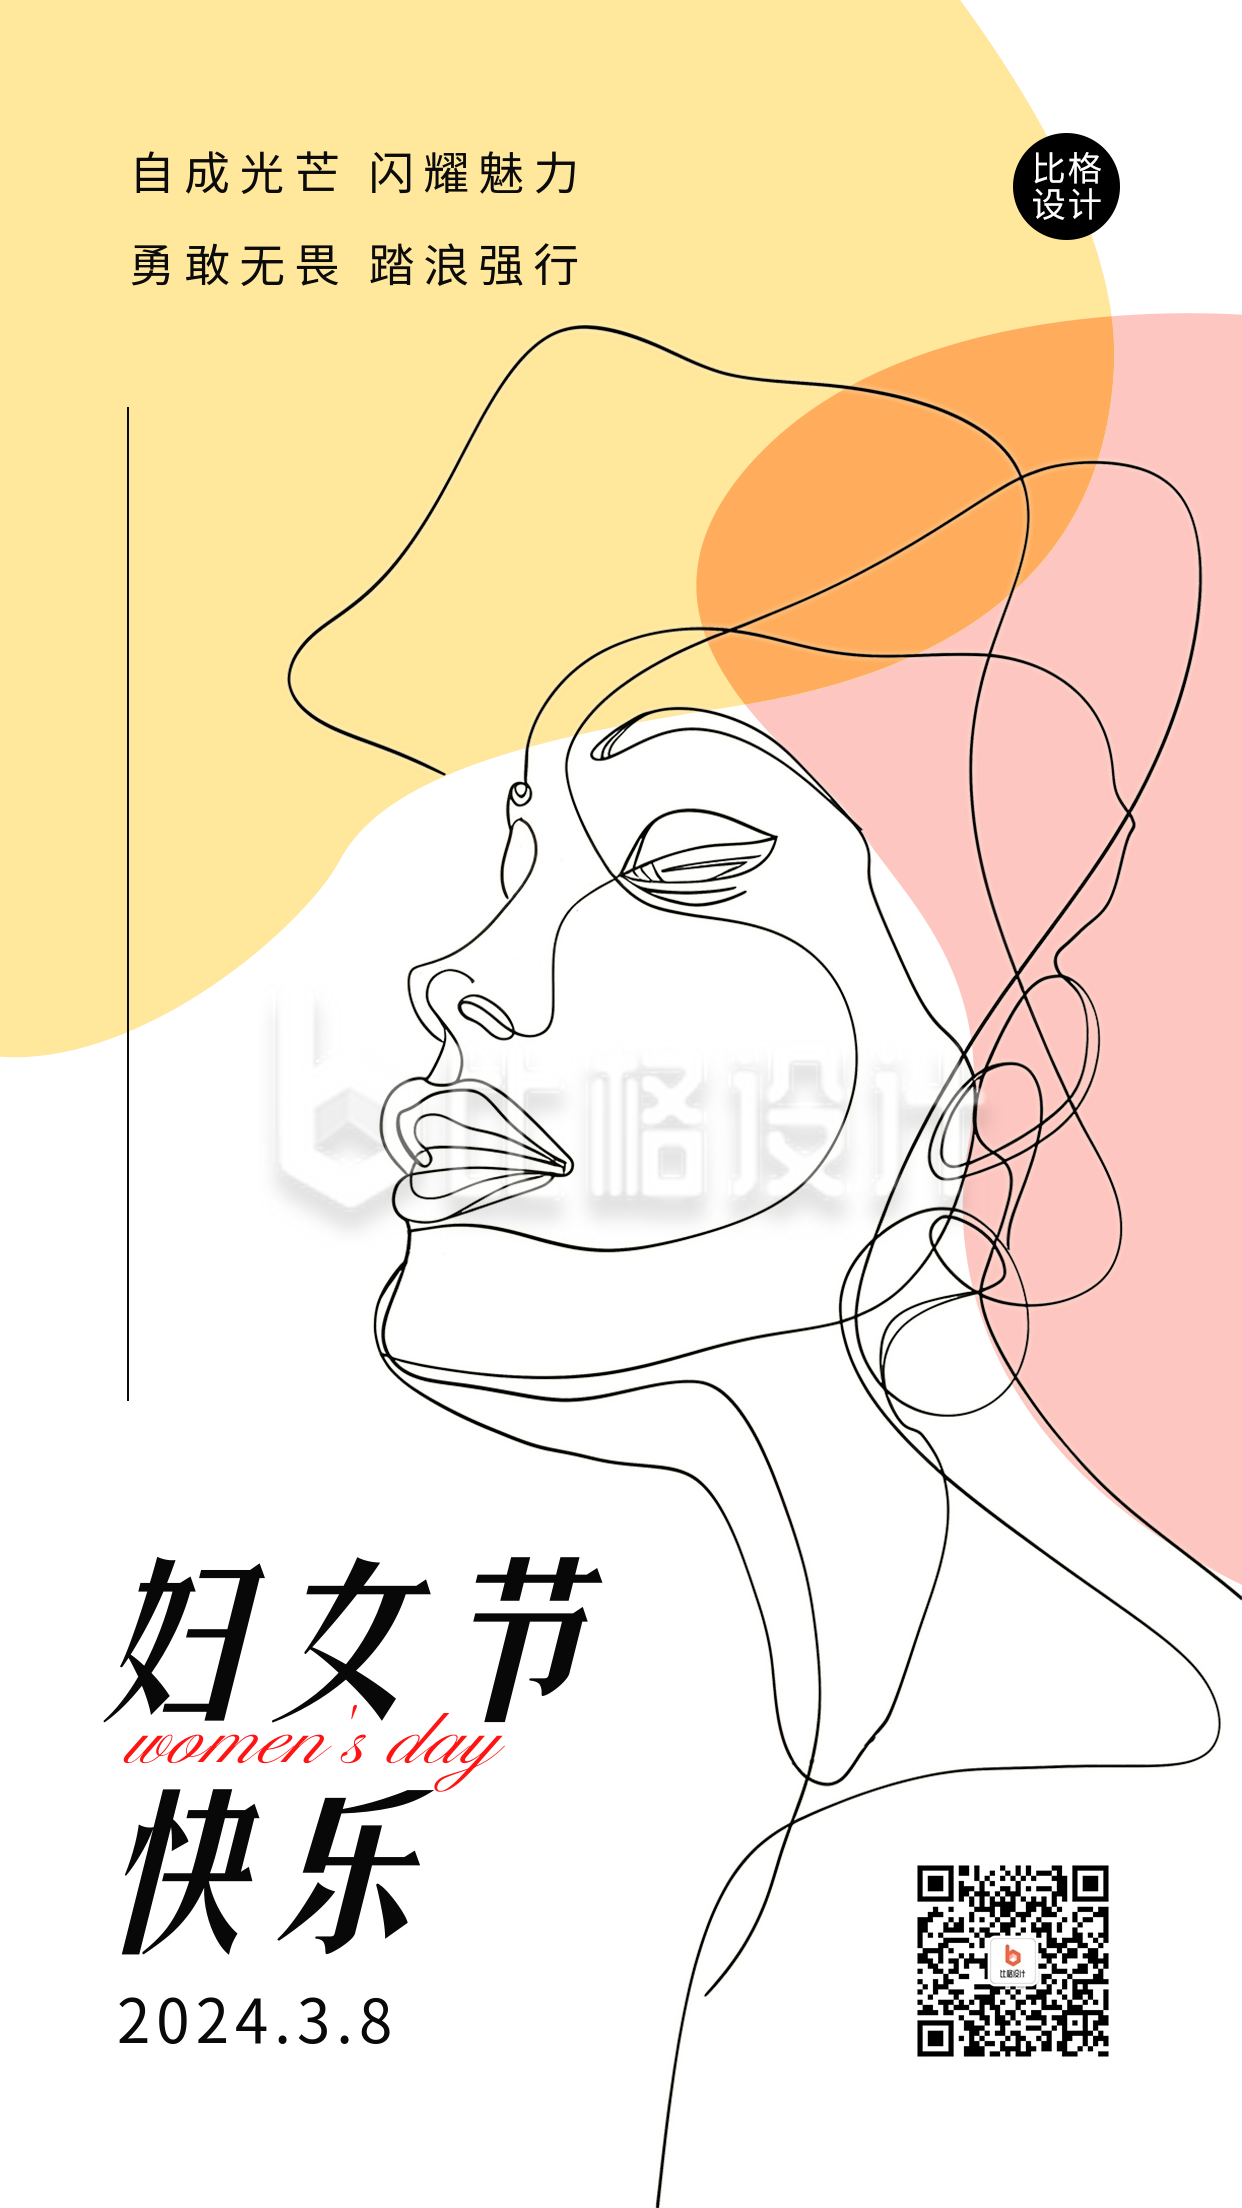 简约文艺风妇女节祝福宣传海报